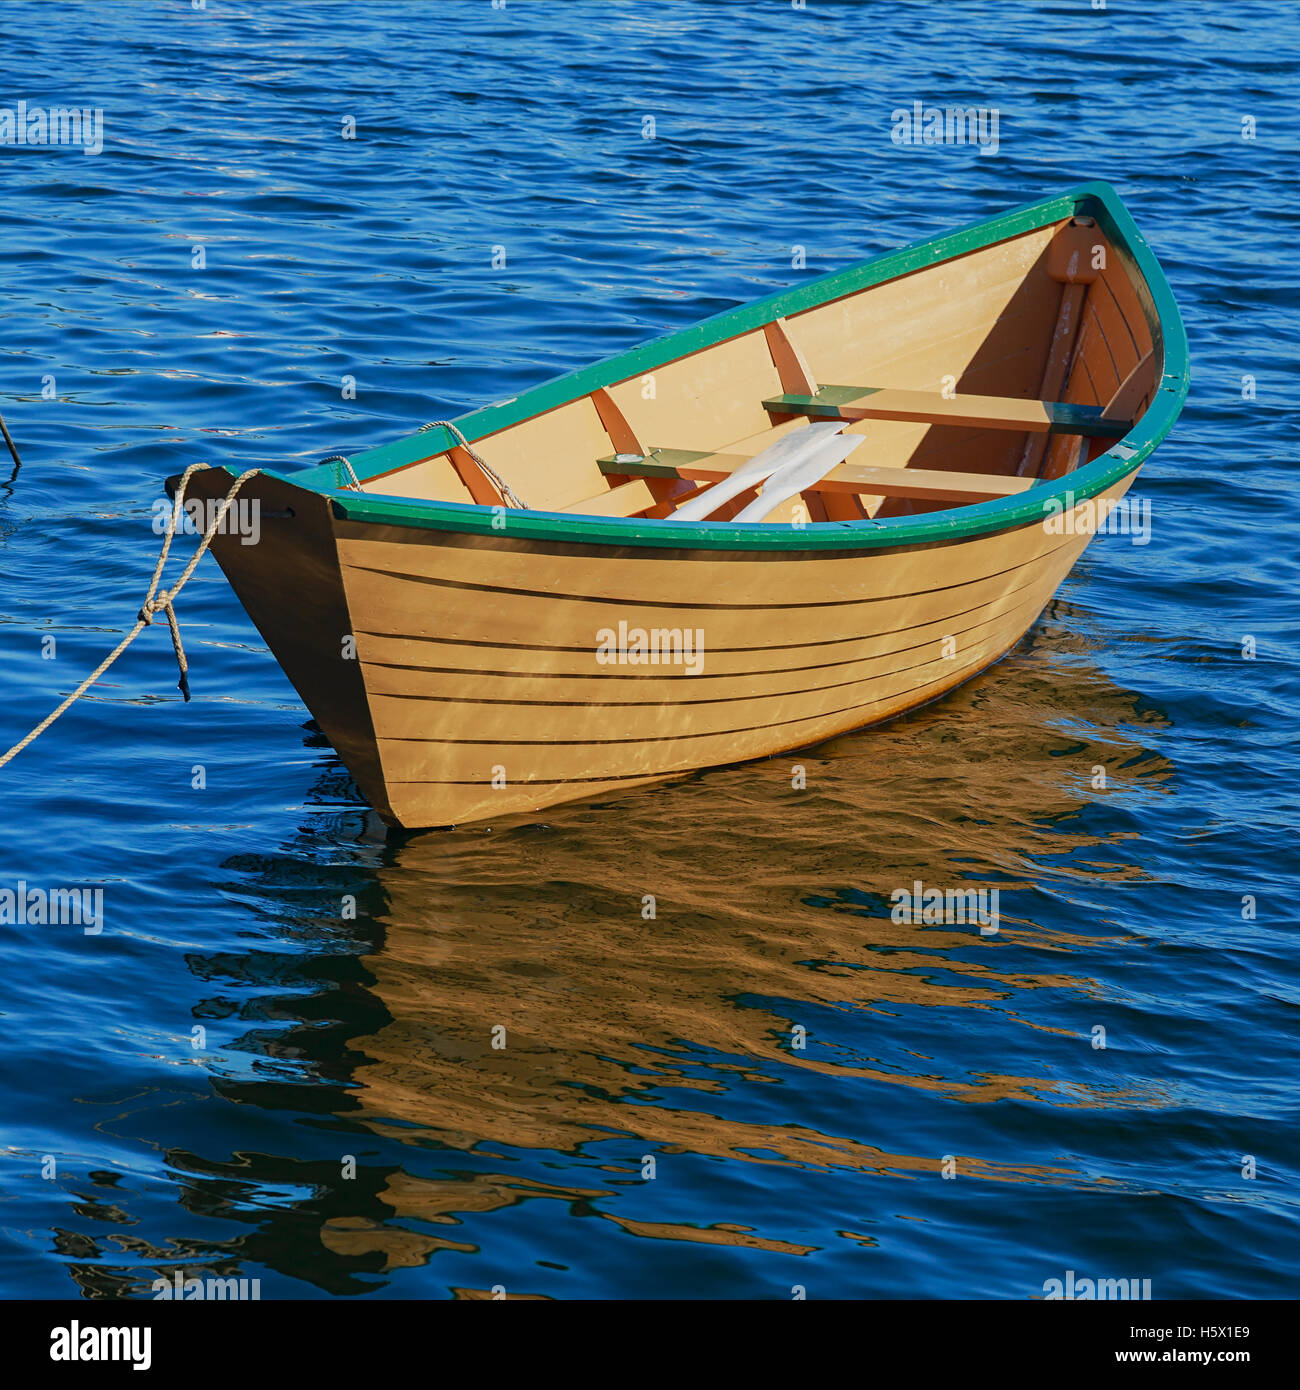 Newfoundland fishing boat or dory. Stock Photo